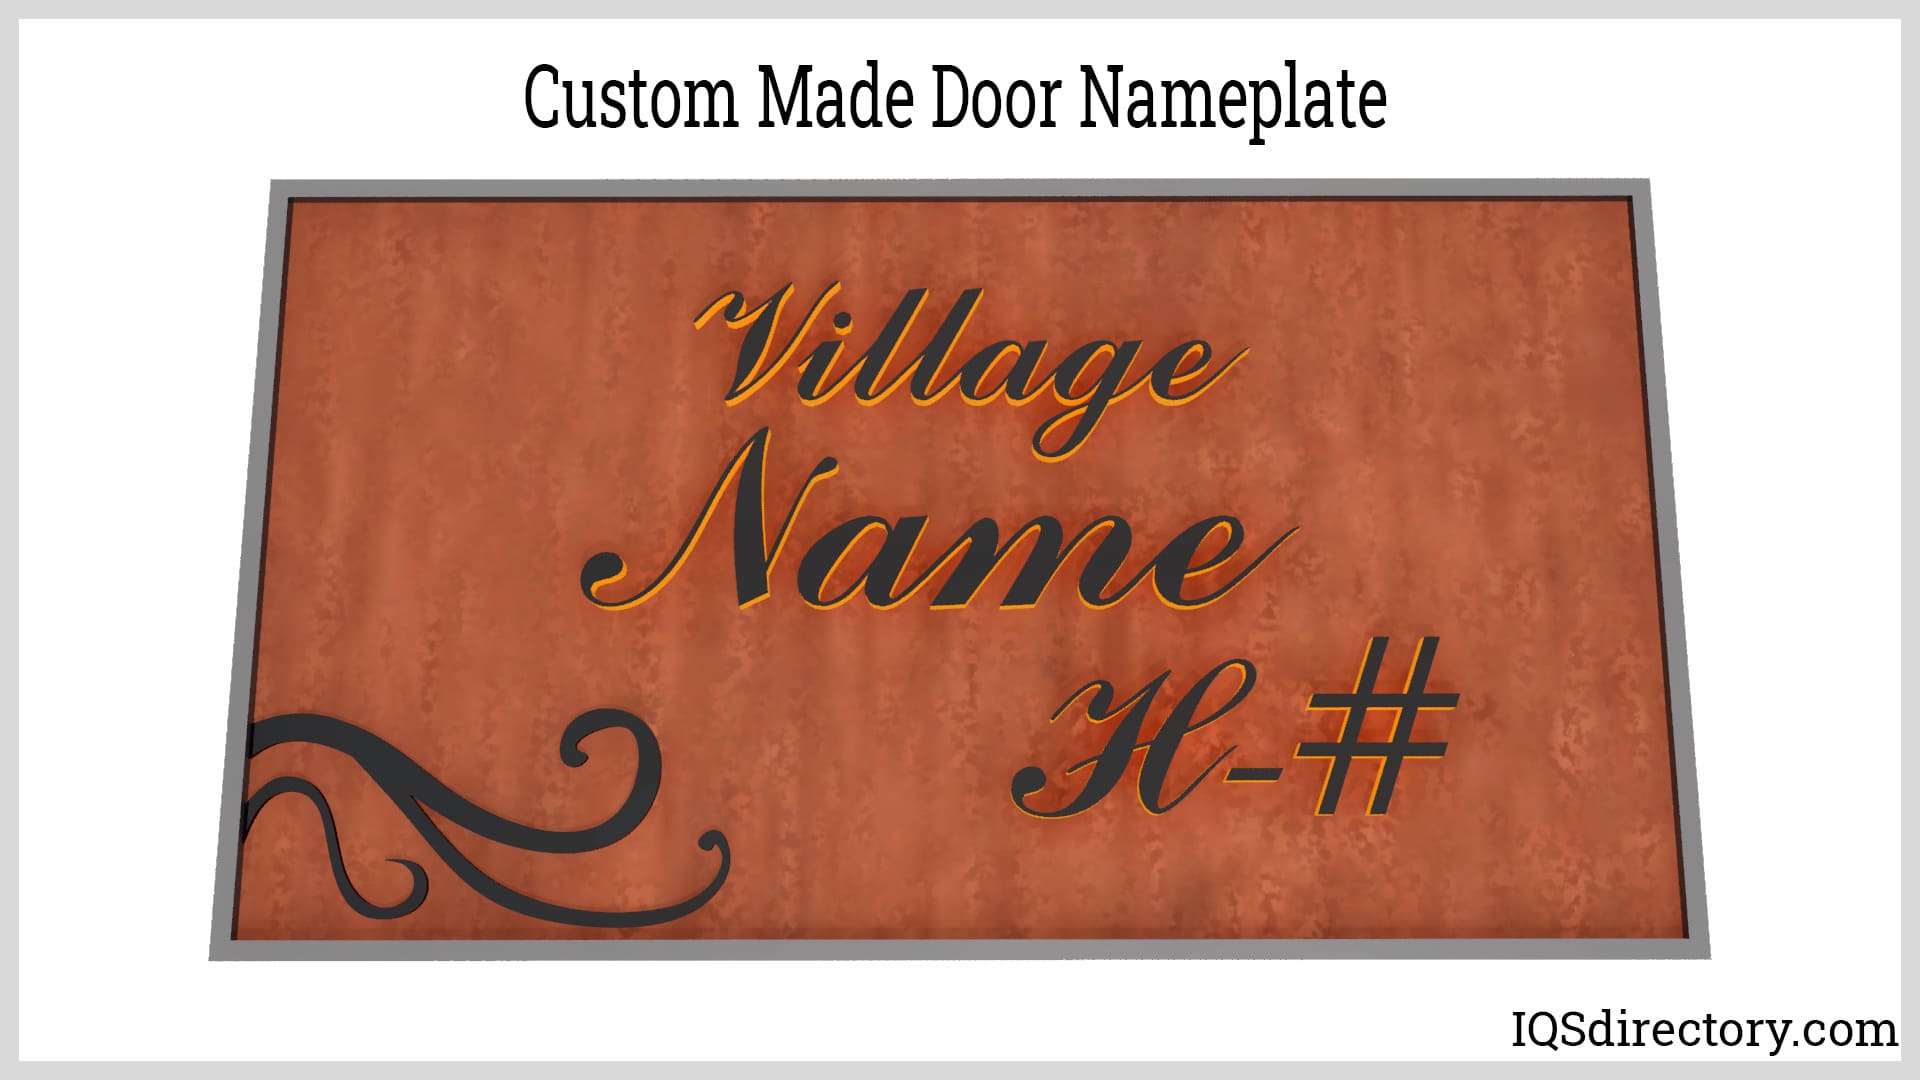 Custom Made Door Nameplate